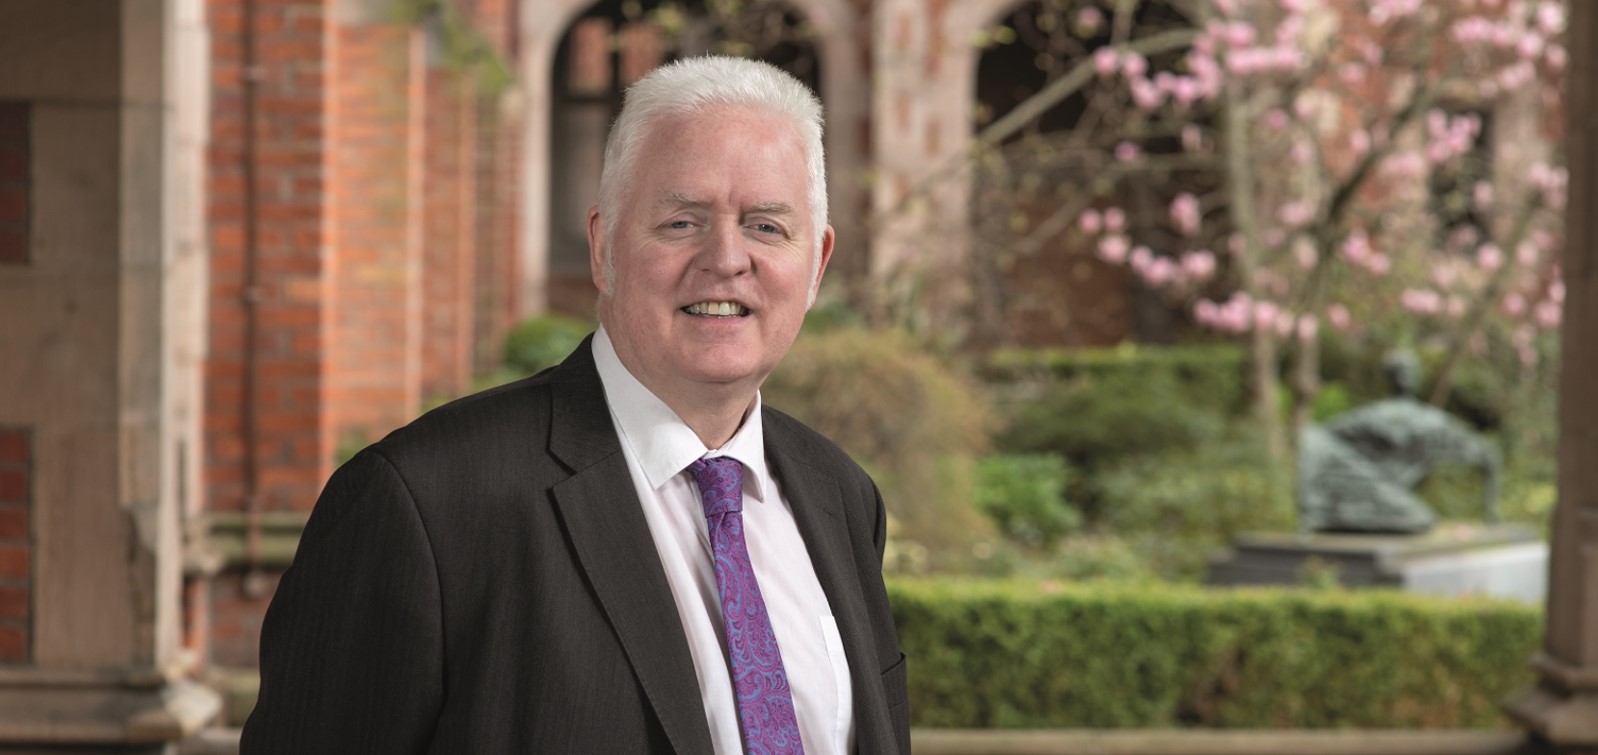 Professor Mark Lawler in jacket and tie in quad at Queen's University Belfast